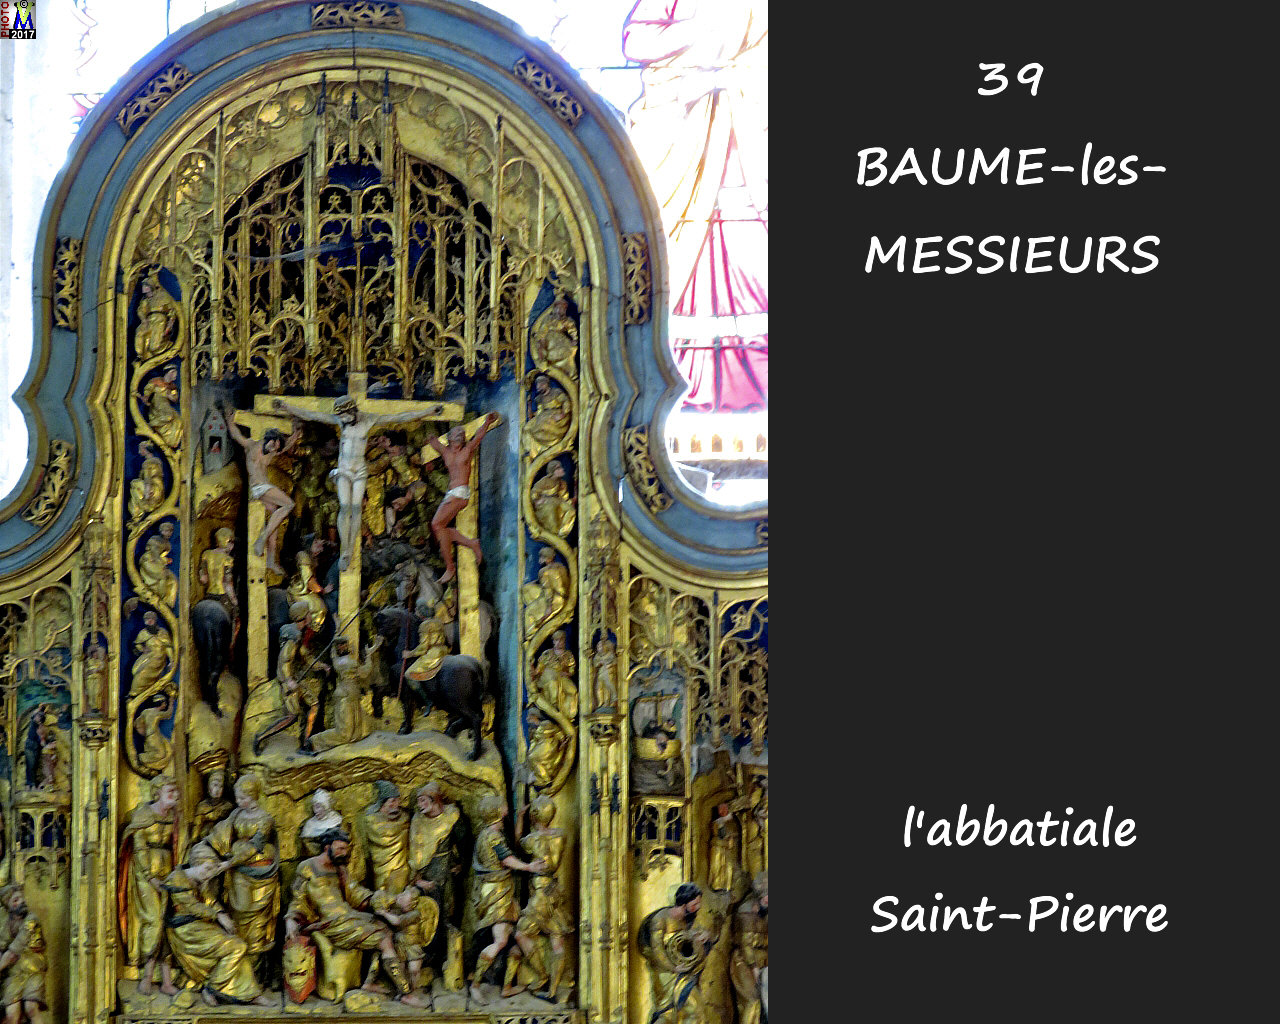 39BAUME-LES-MESSIEURS_abbatiale_240.jpg